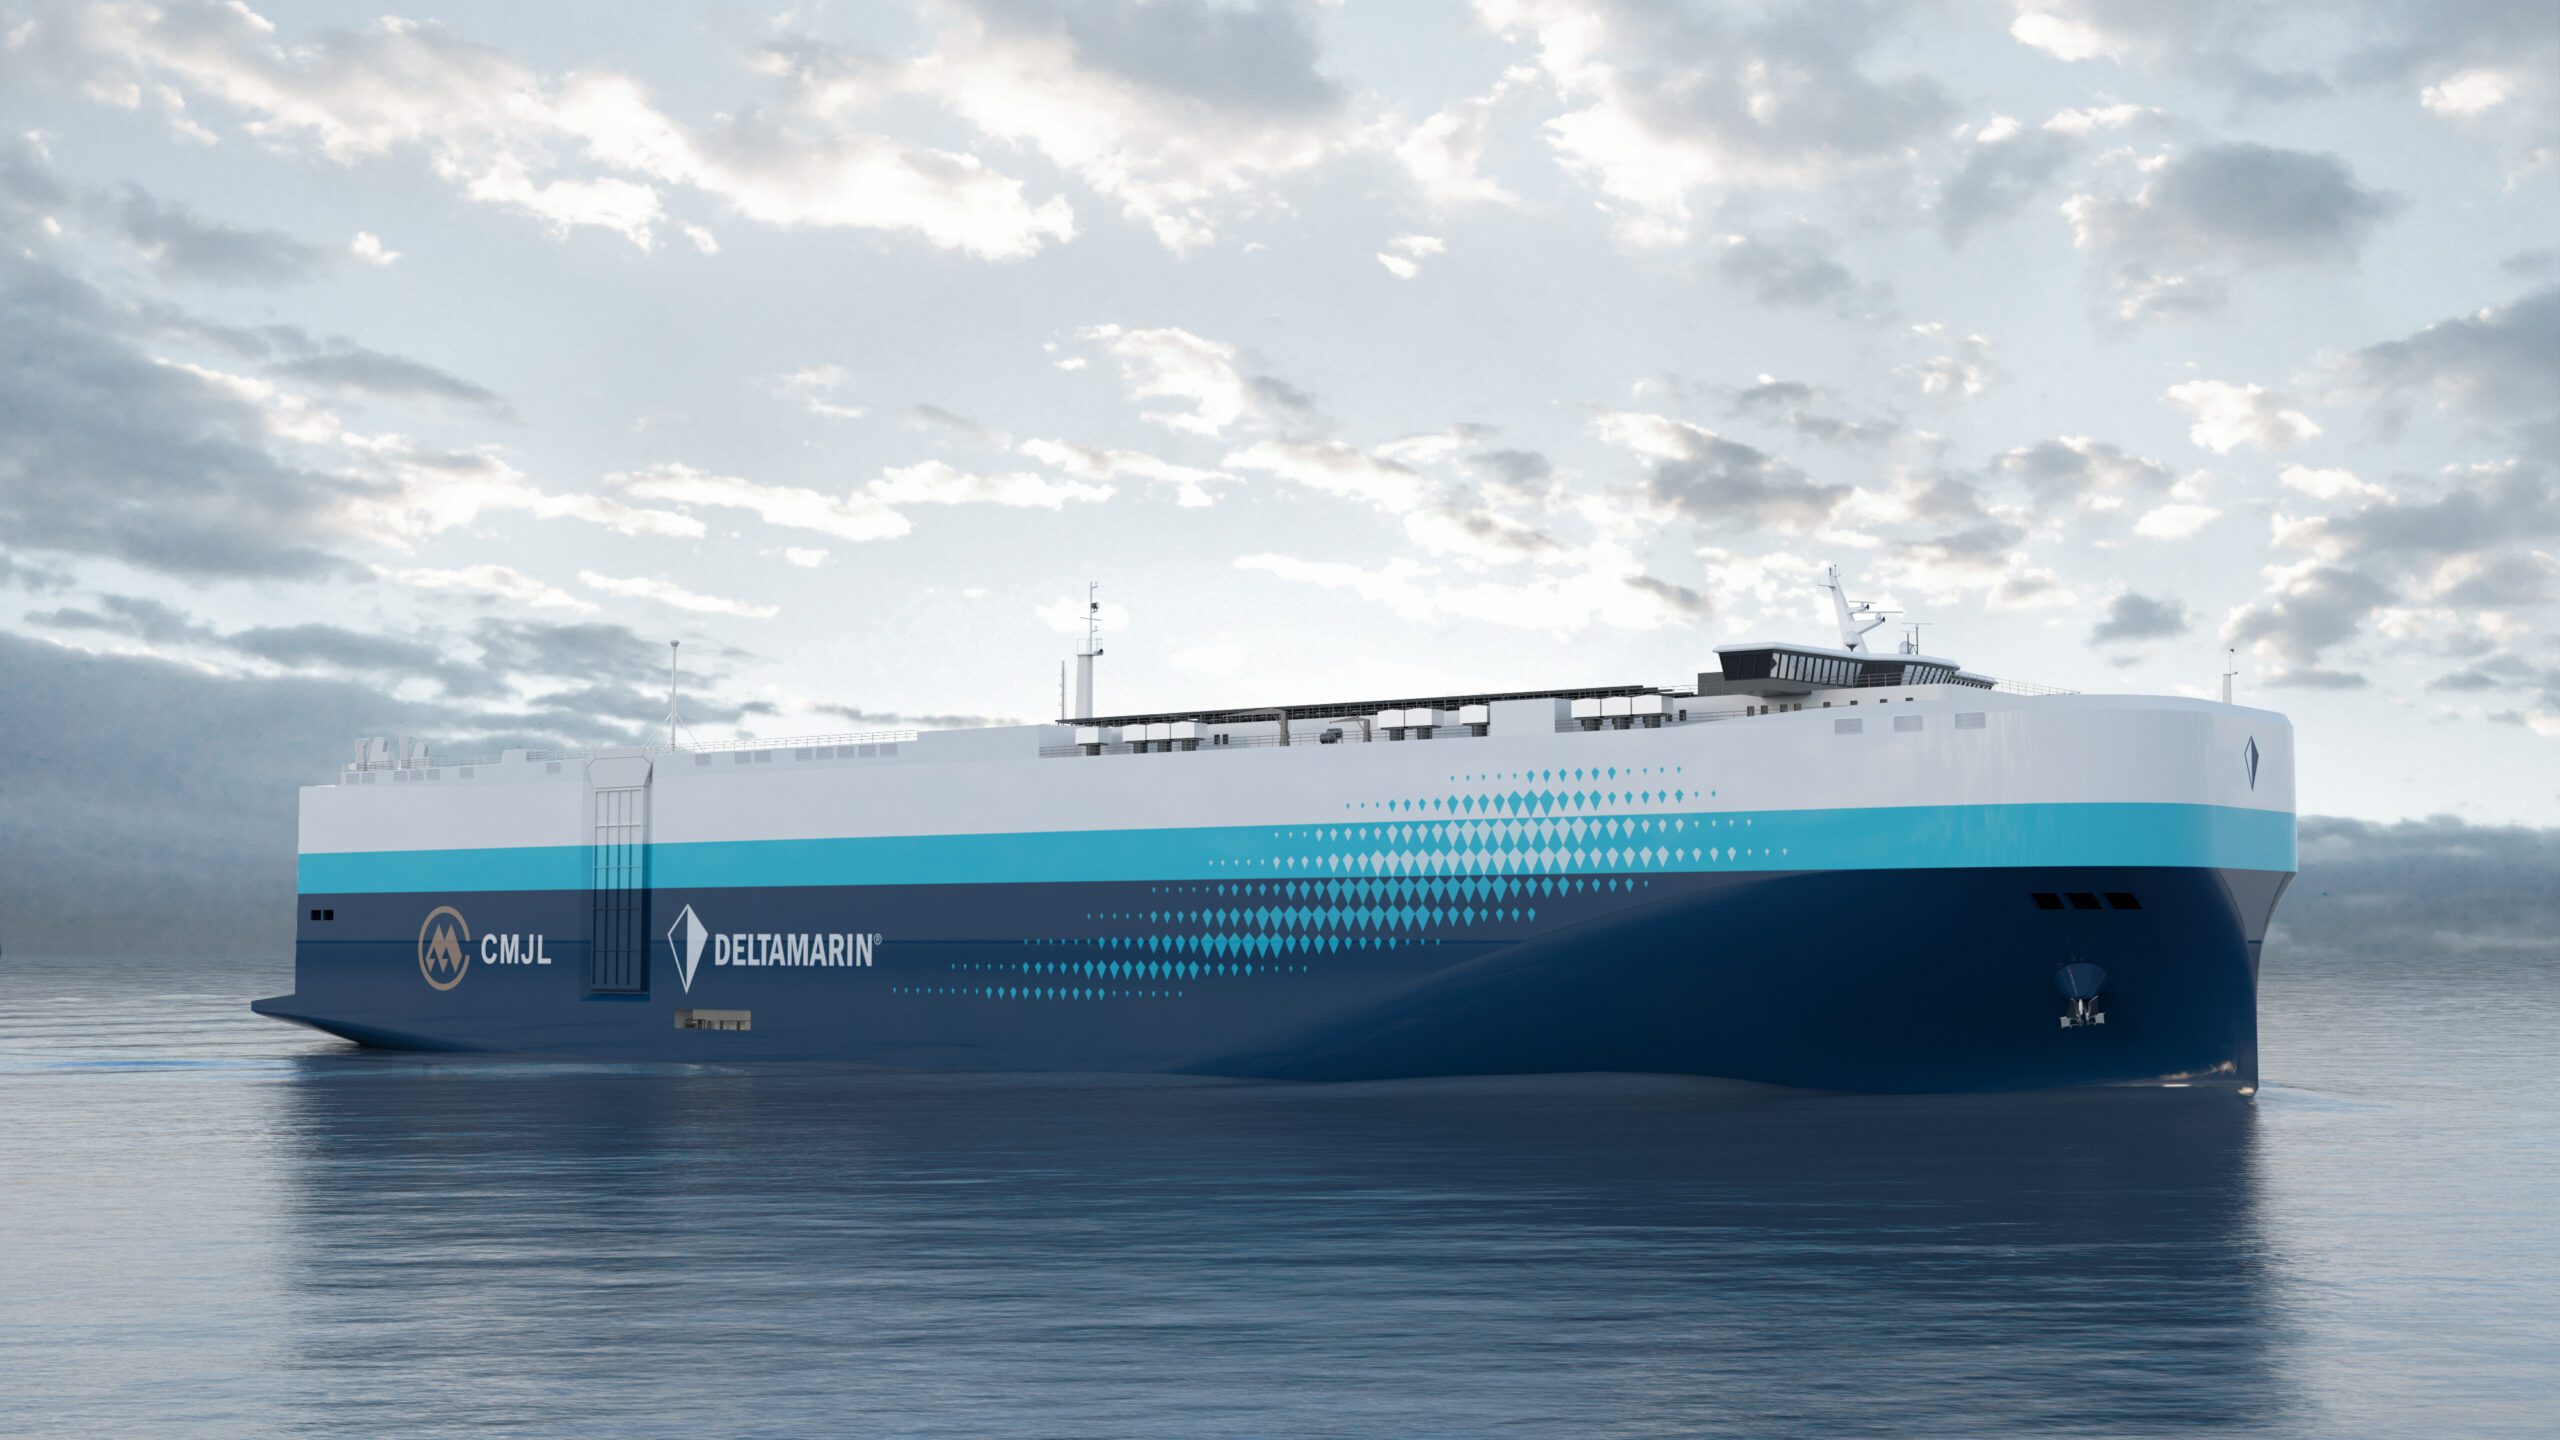 An illustration of Deltamarin's 11,000 CEU car carrier design